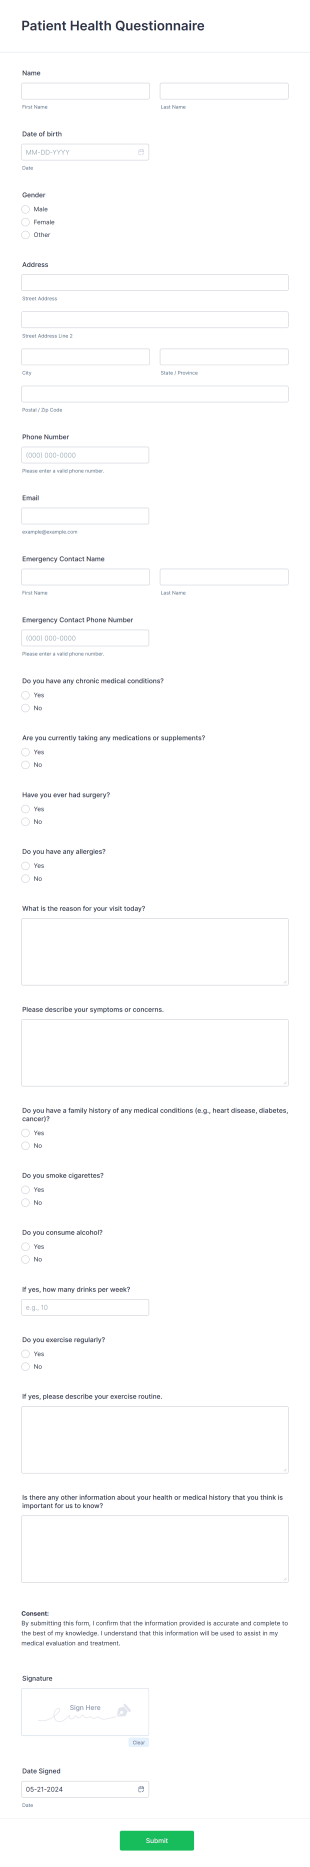 Patient Health Questionnaire Form Template